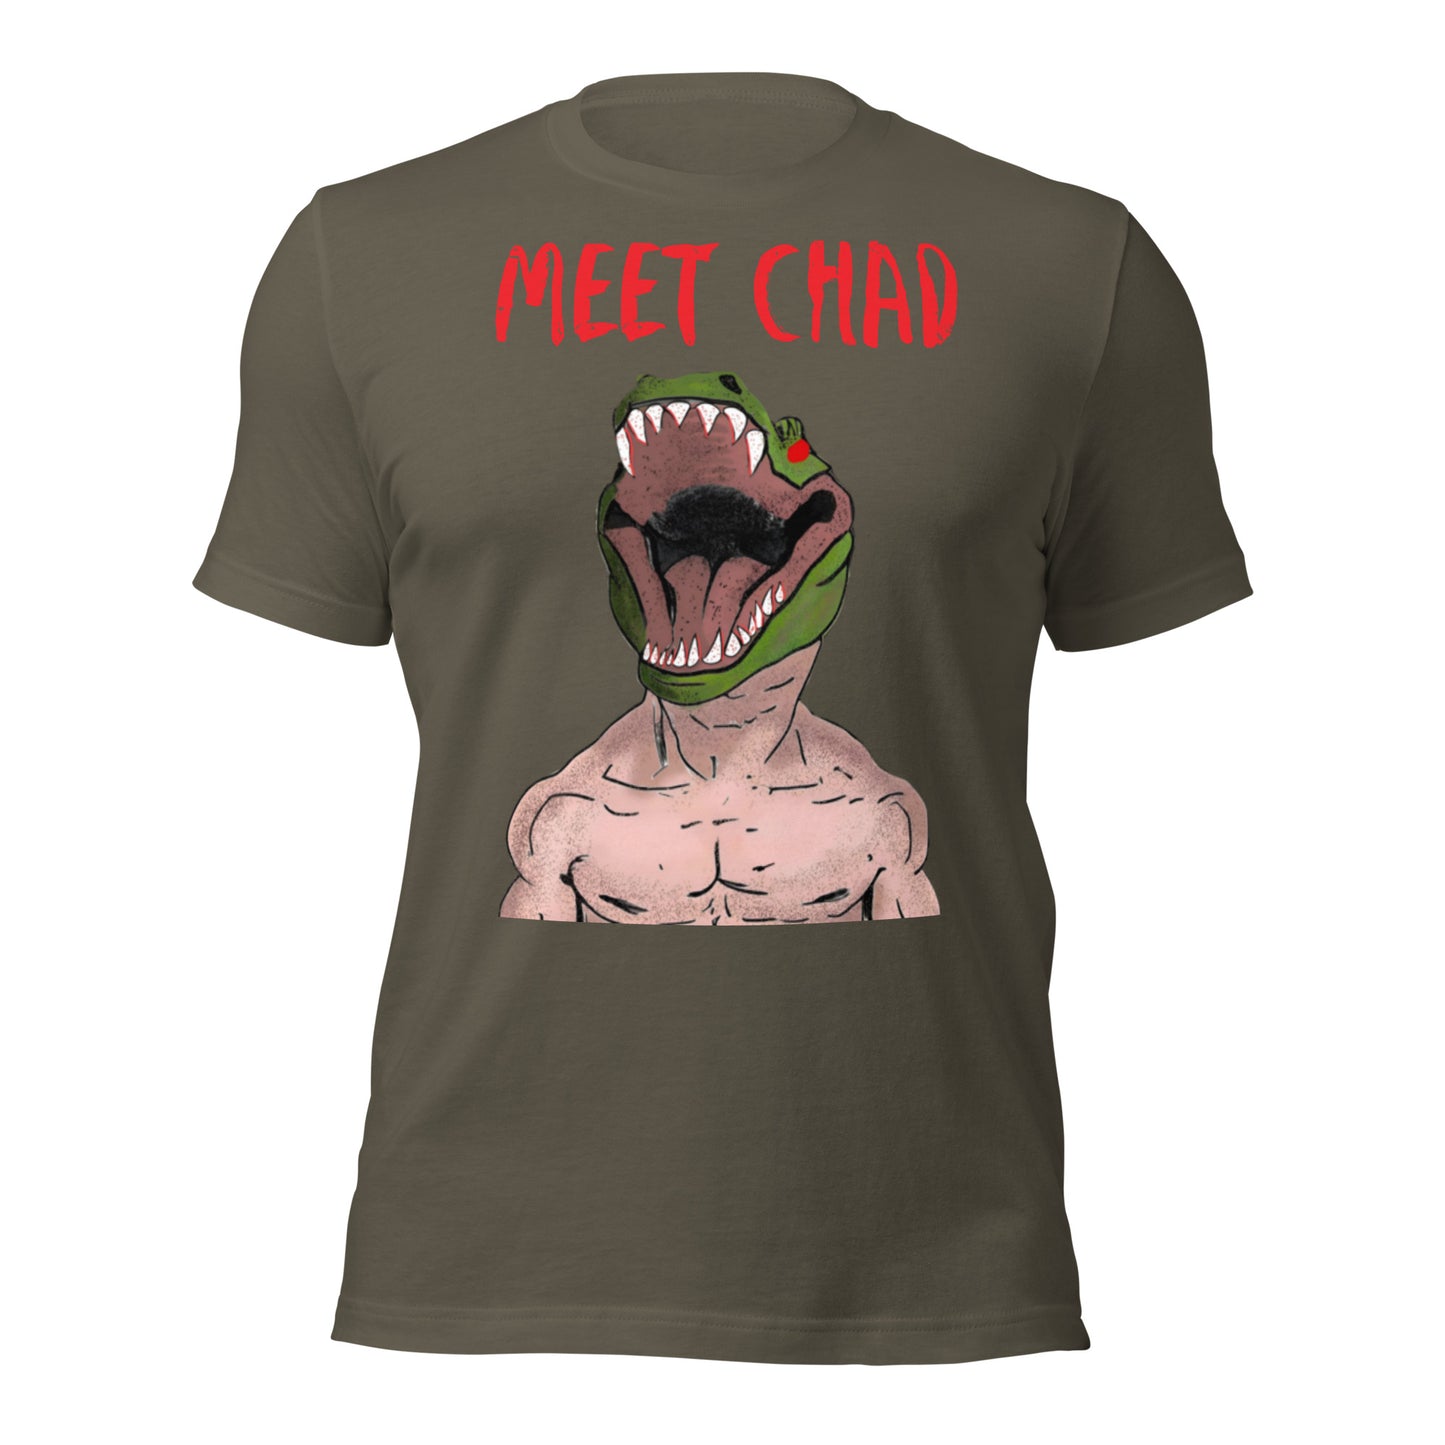 Meet Chad T-Shirt -Premium Material